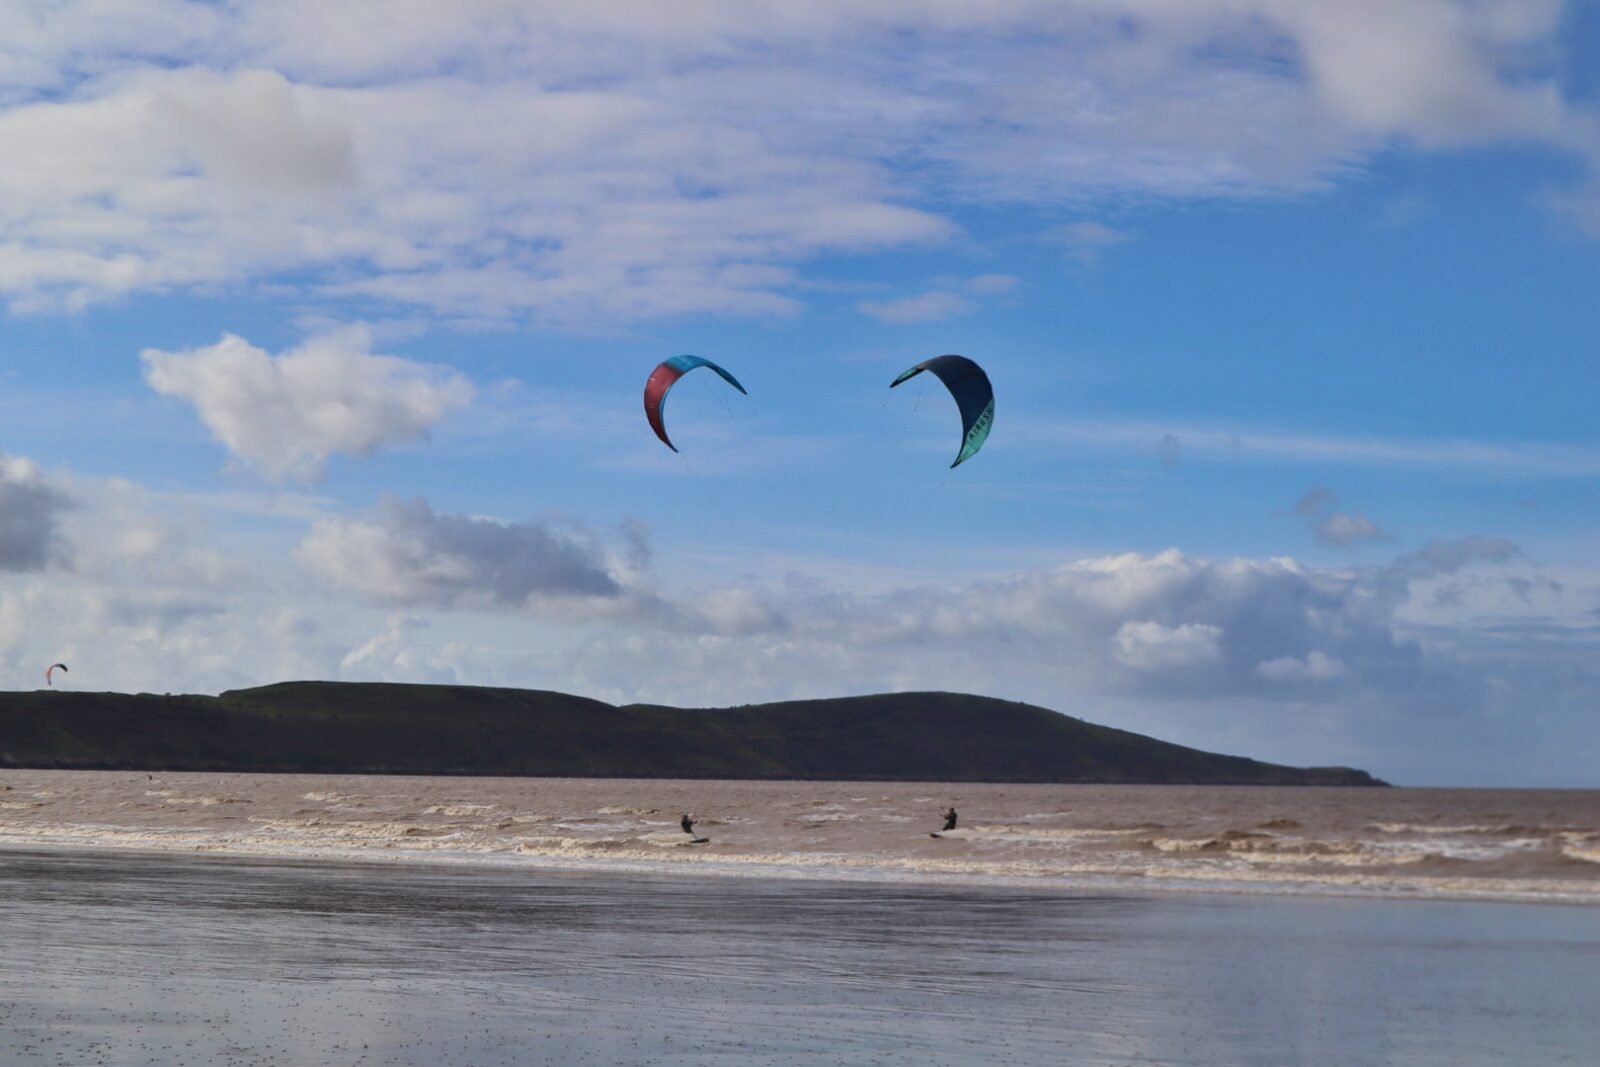 Kite surfing in Weston-super-Mare